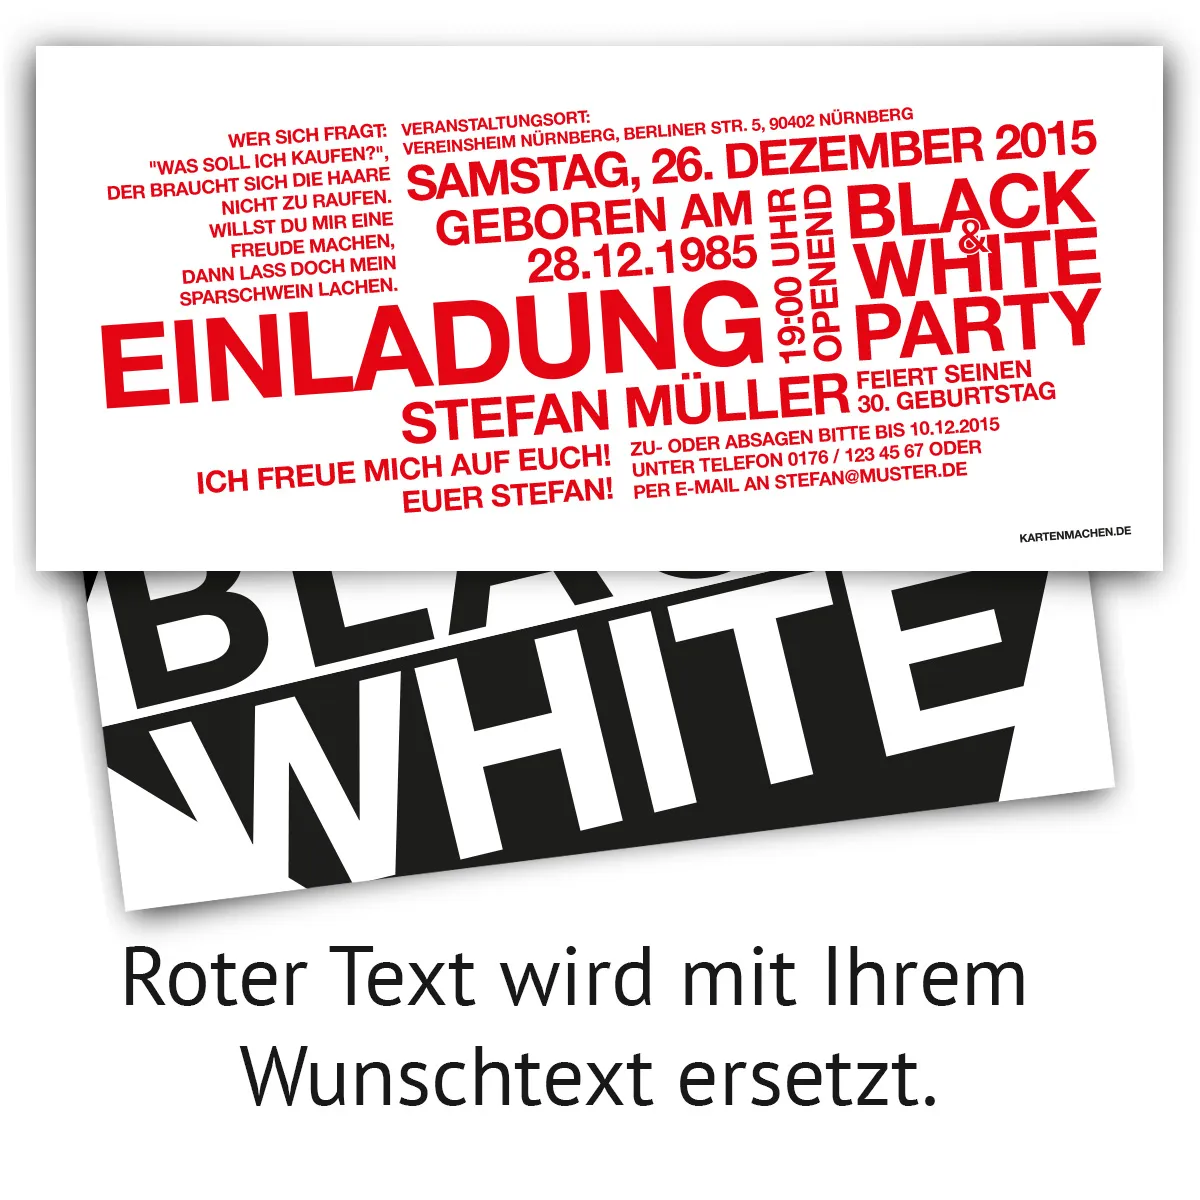 Geburtstag Einladungen - Black & White Party in Weiß